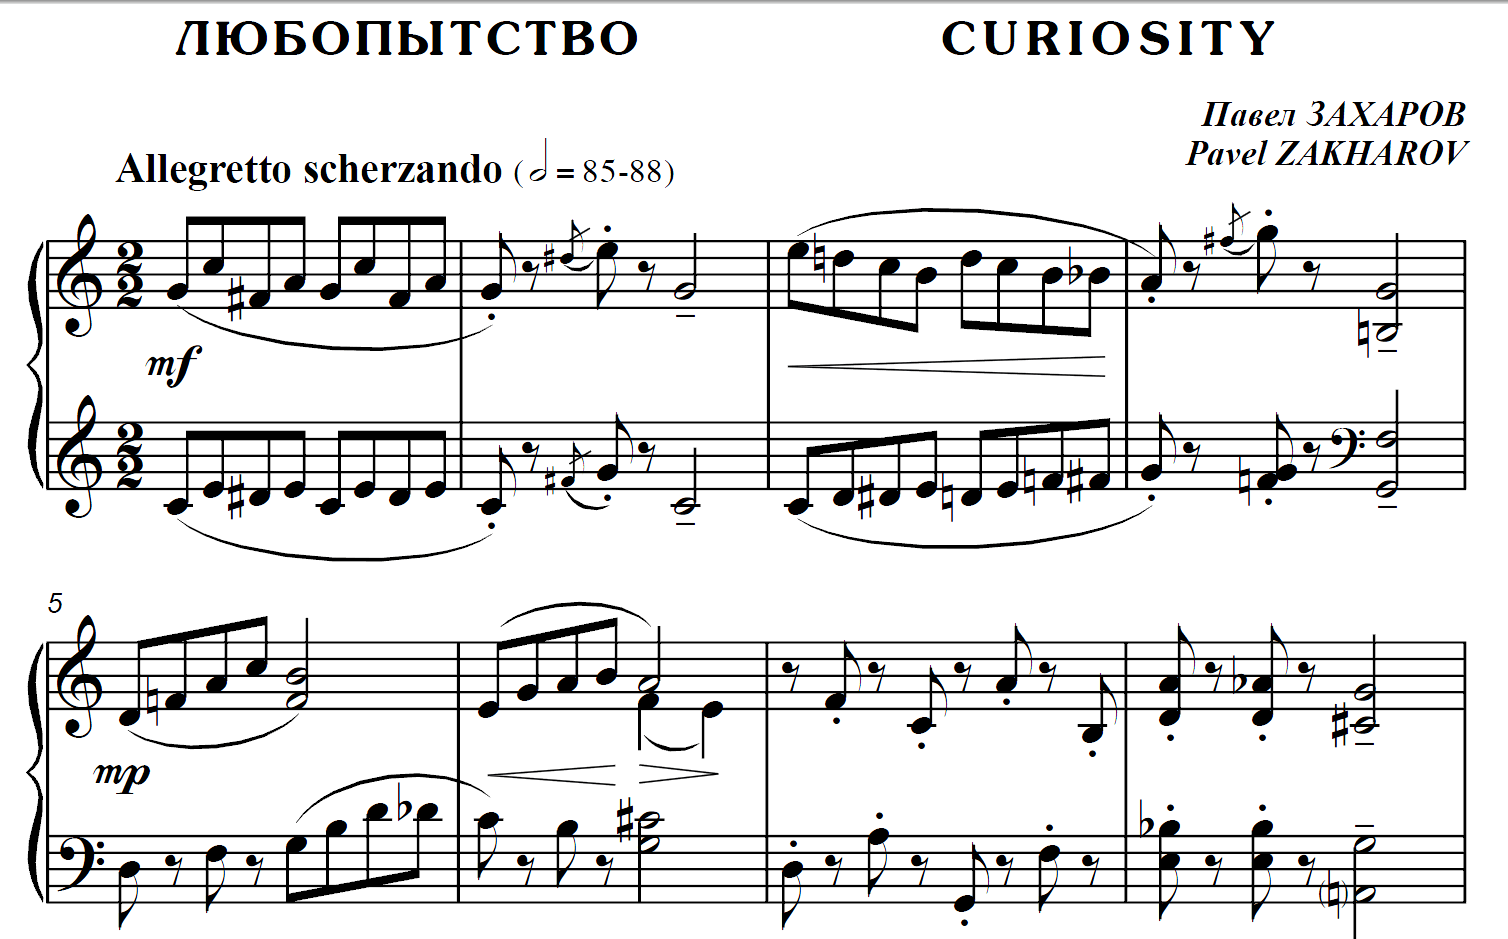 5s01 Curiosity, PAVEL ZAKHAROV / piano